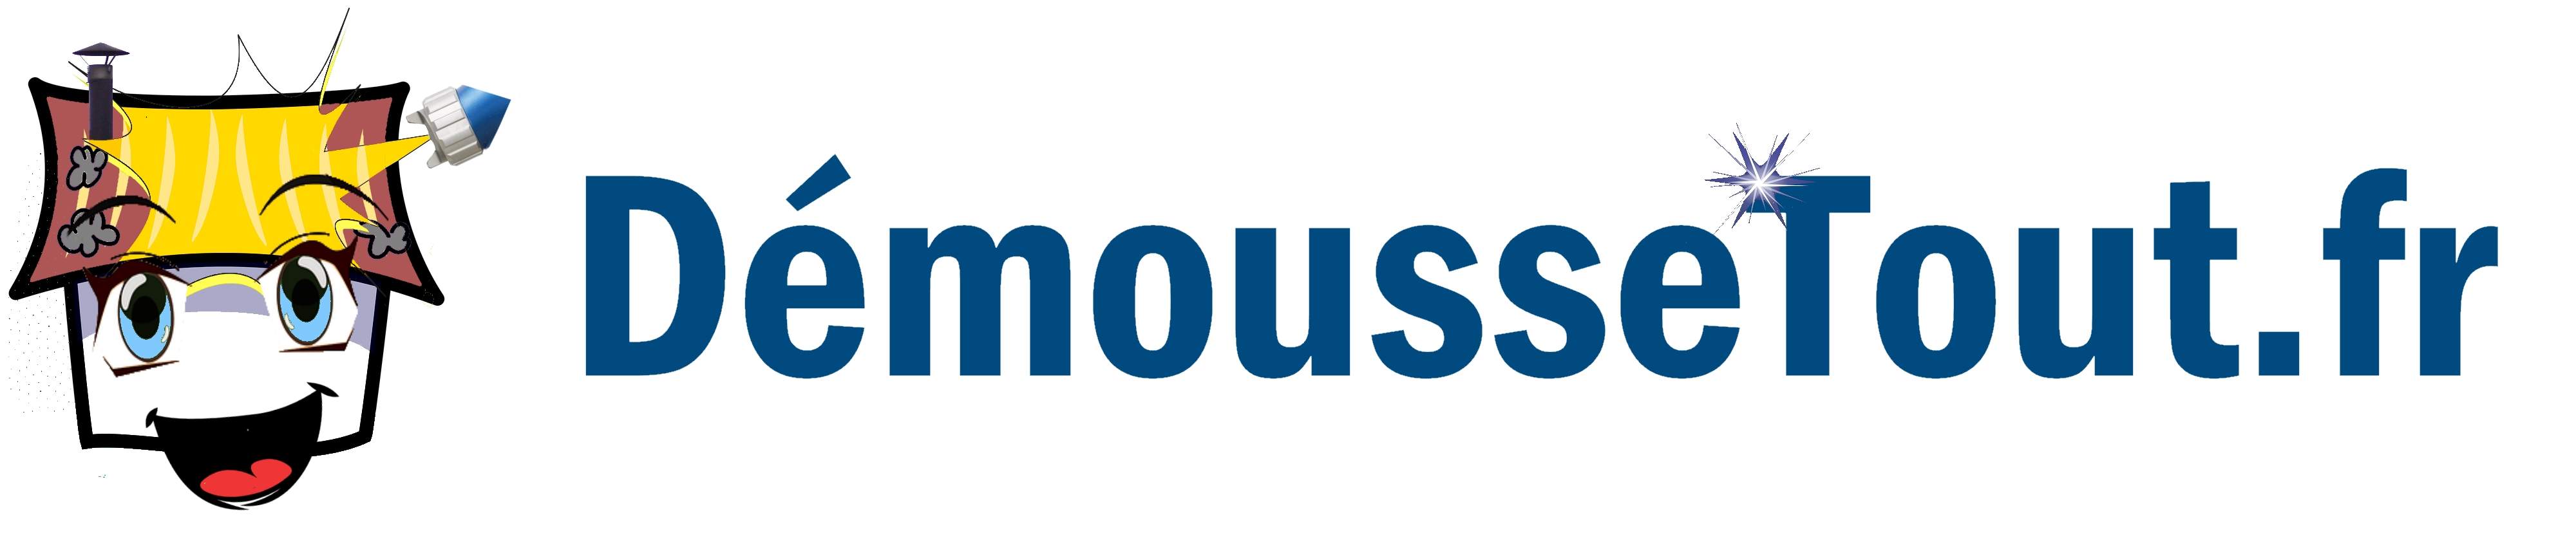 Logo DémousseTout.Fr traitement anti-humidité et infiltration d'eau Oise 60